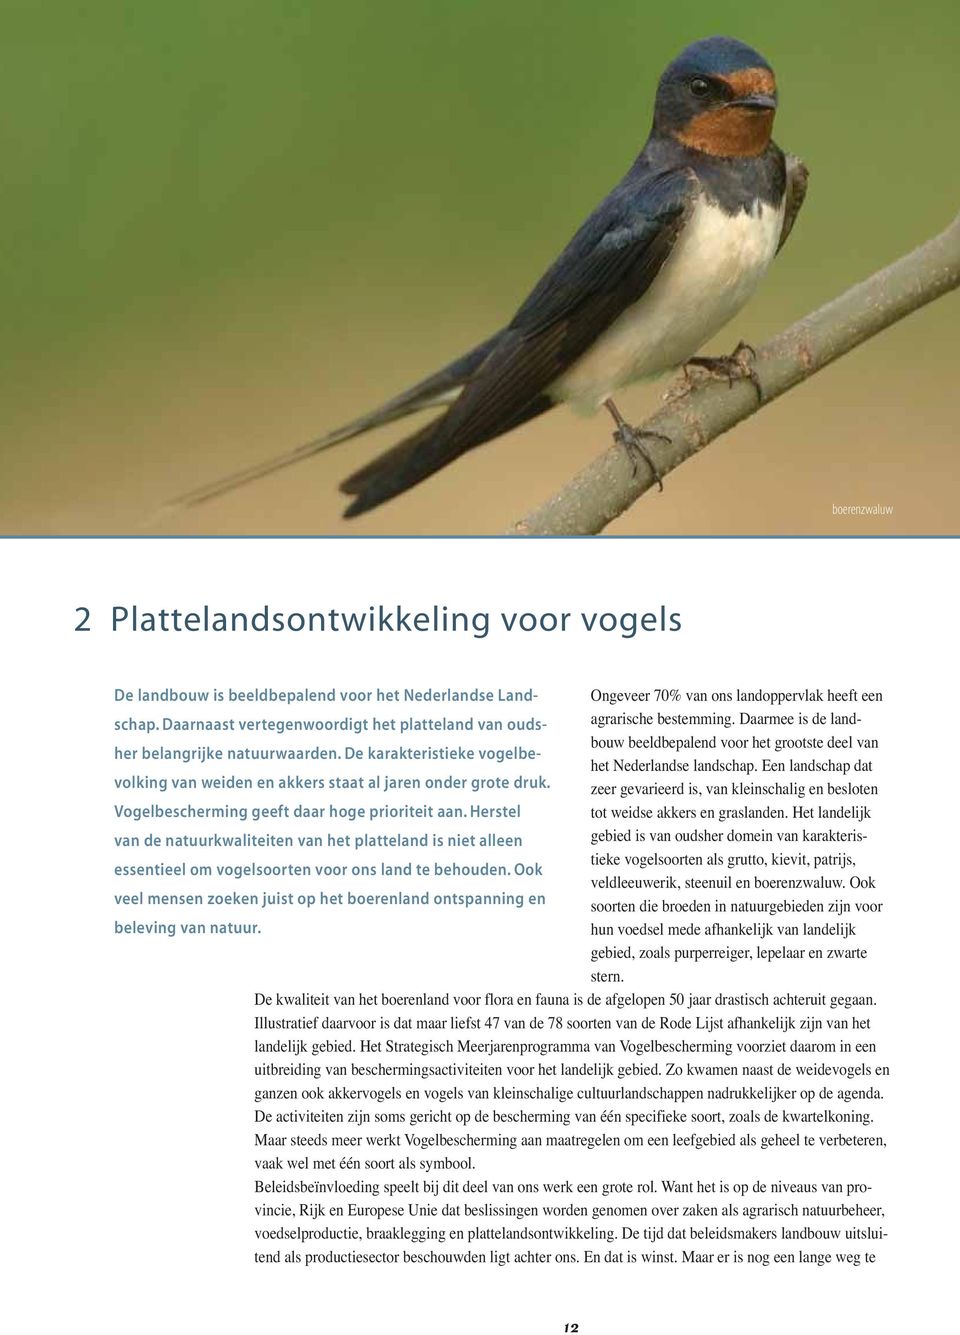 De karakteristieke vogelbevolking van weiden en akkers staat al jaren onder grote druk. zeer gevarieerd is, van kleinschalig en besloten het Nederlandse landschap.